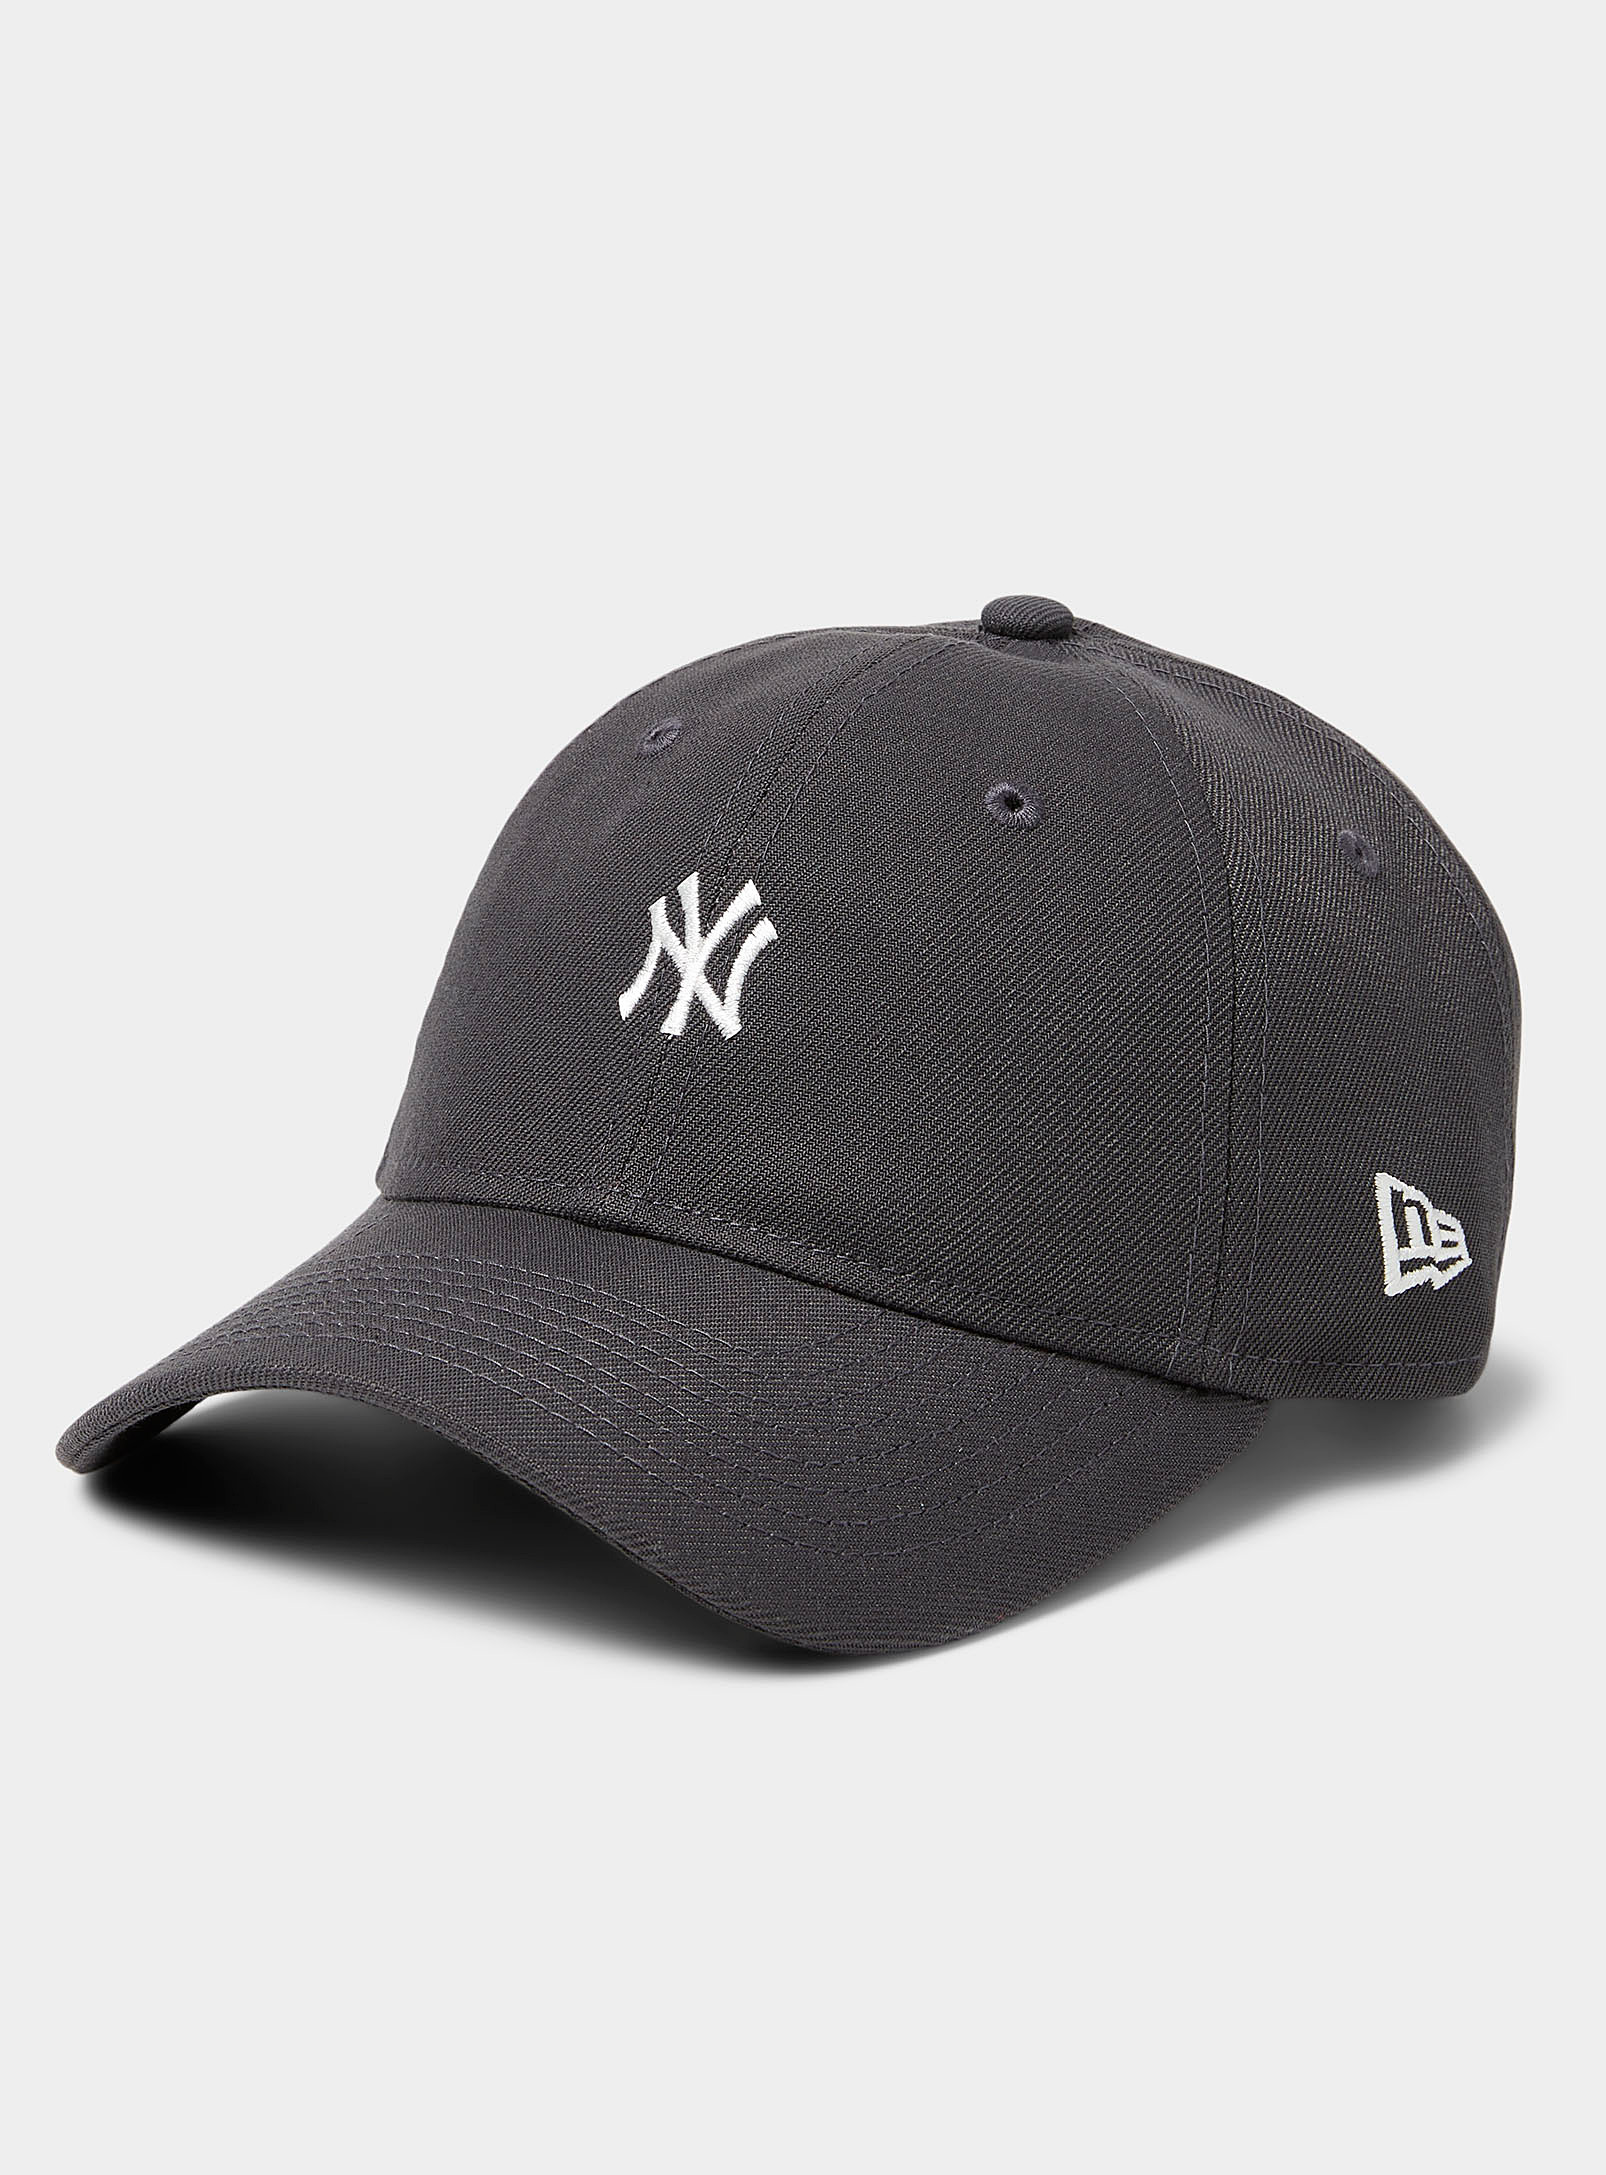 New Era - Men's New York Yankees mini-logo cap